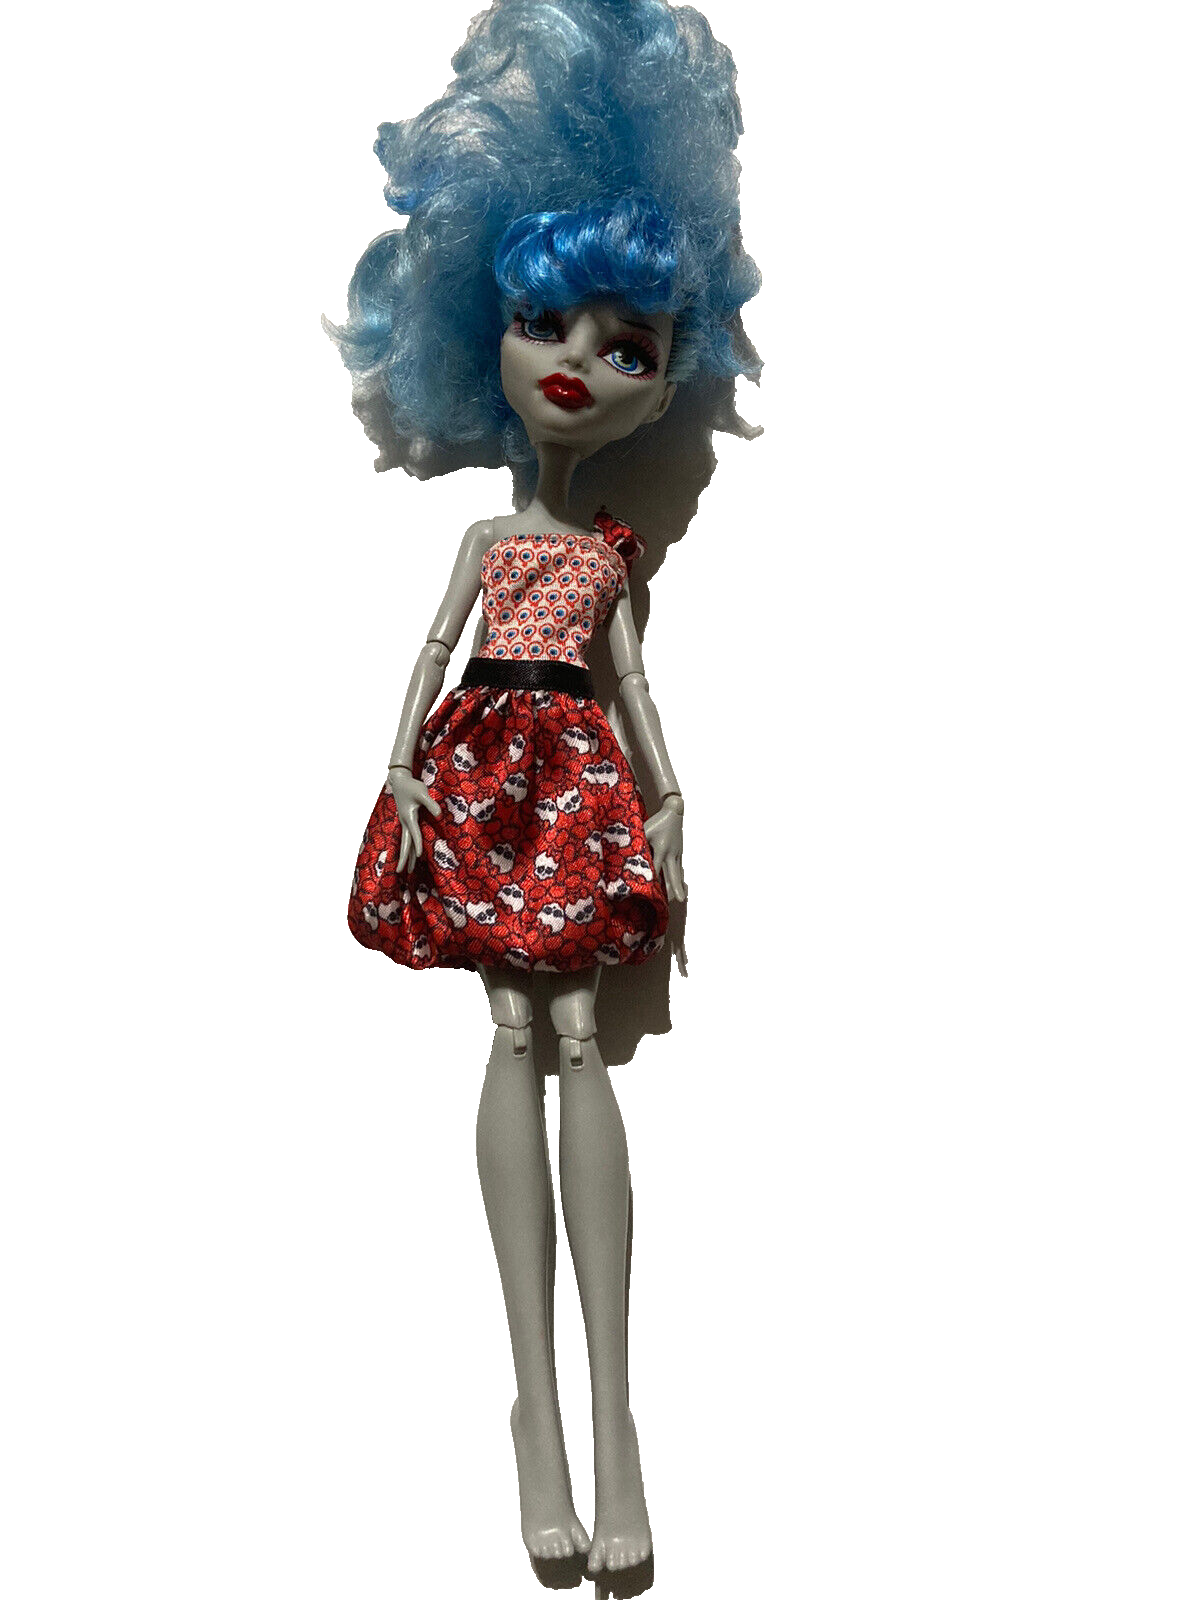 Monster High Doll Ghoulia Yelps Skull Dress Mattel 2008 - $29.60